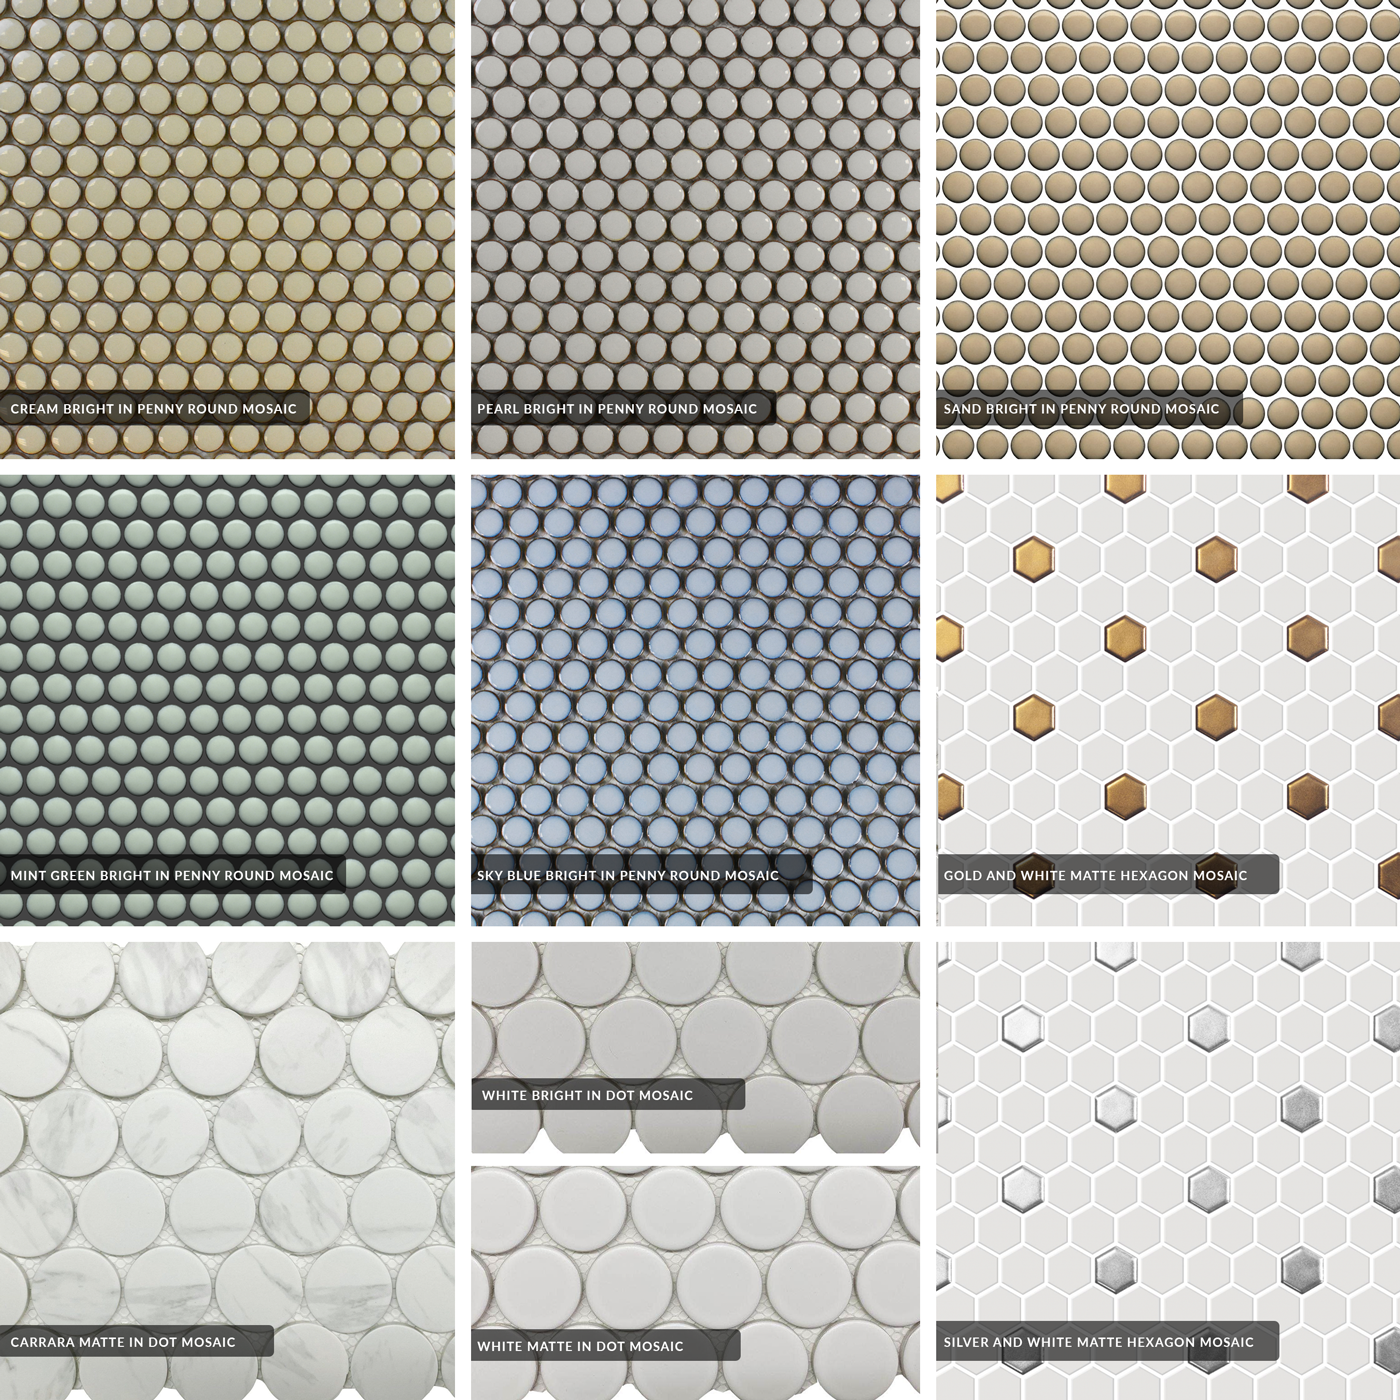 Roca CC Mosaics + Glazed Porcelain Tile for Backsplash, Shower Wall or Floors Image